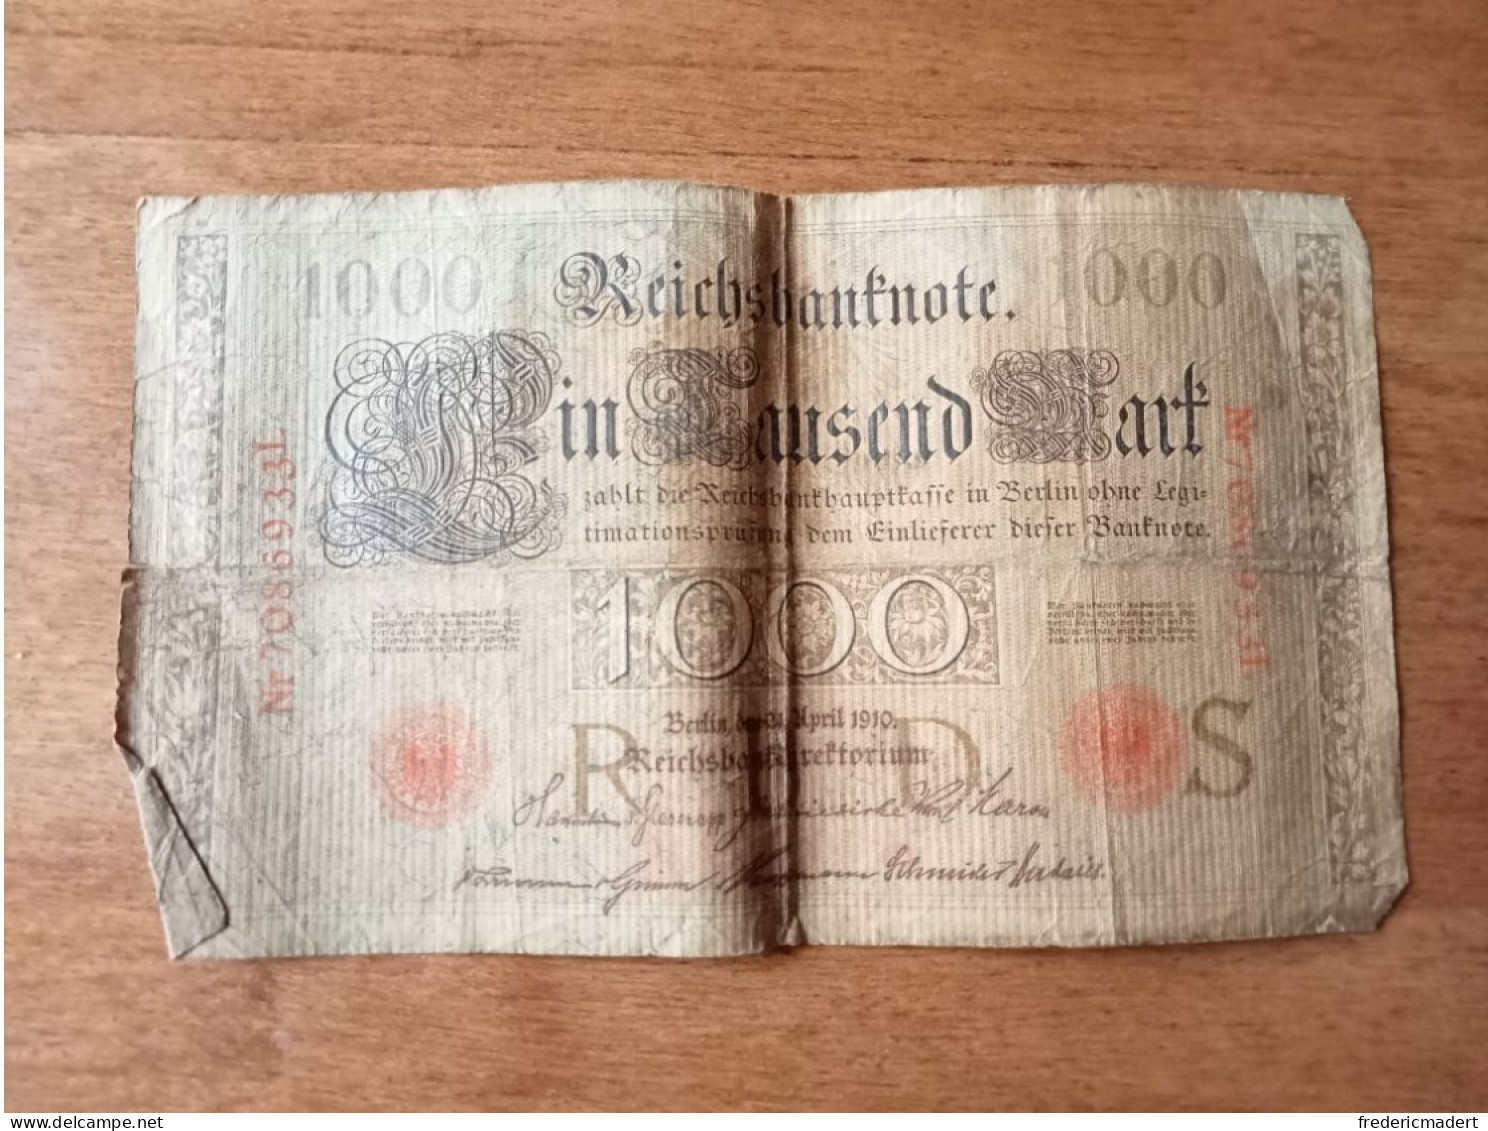 Billet De 1 000 Reichsbanknote De 1910 - Sammlungen